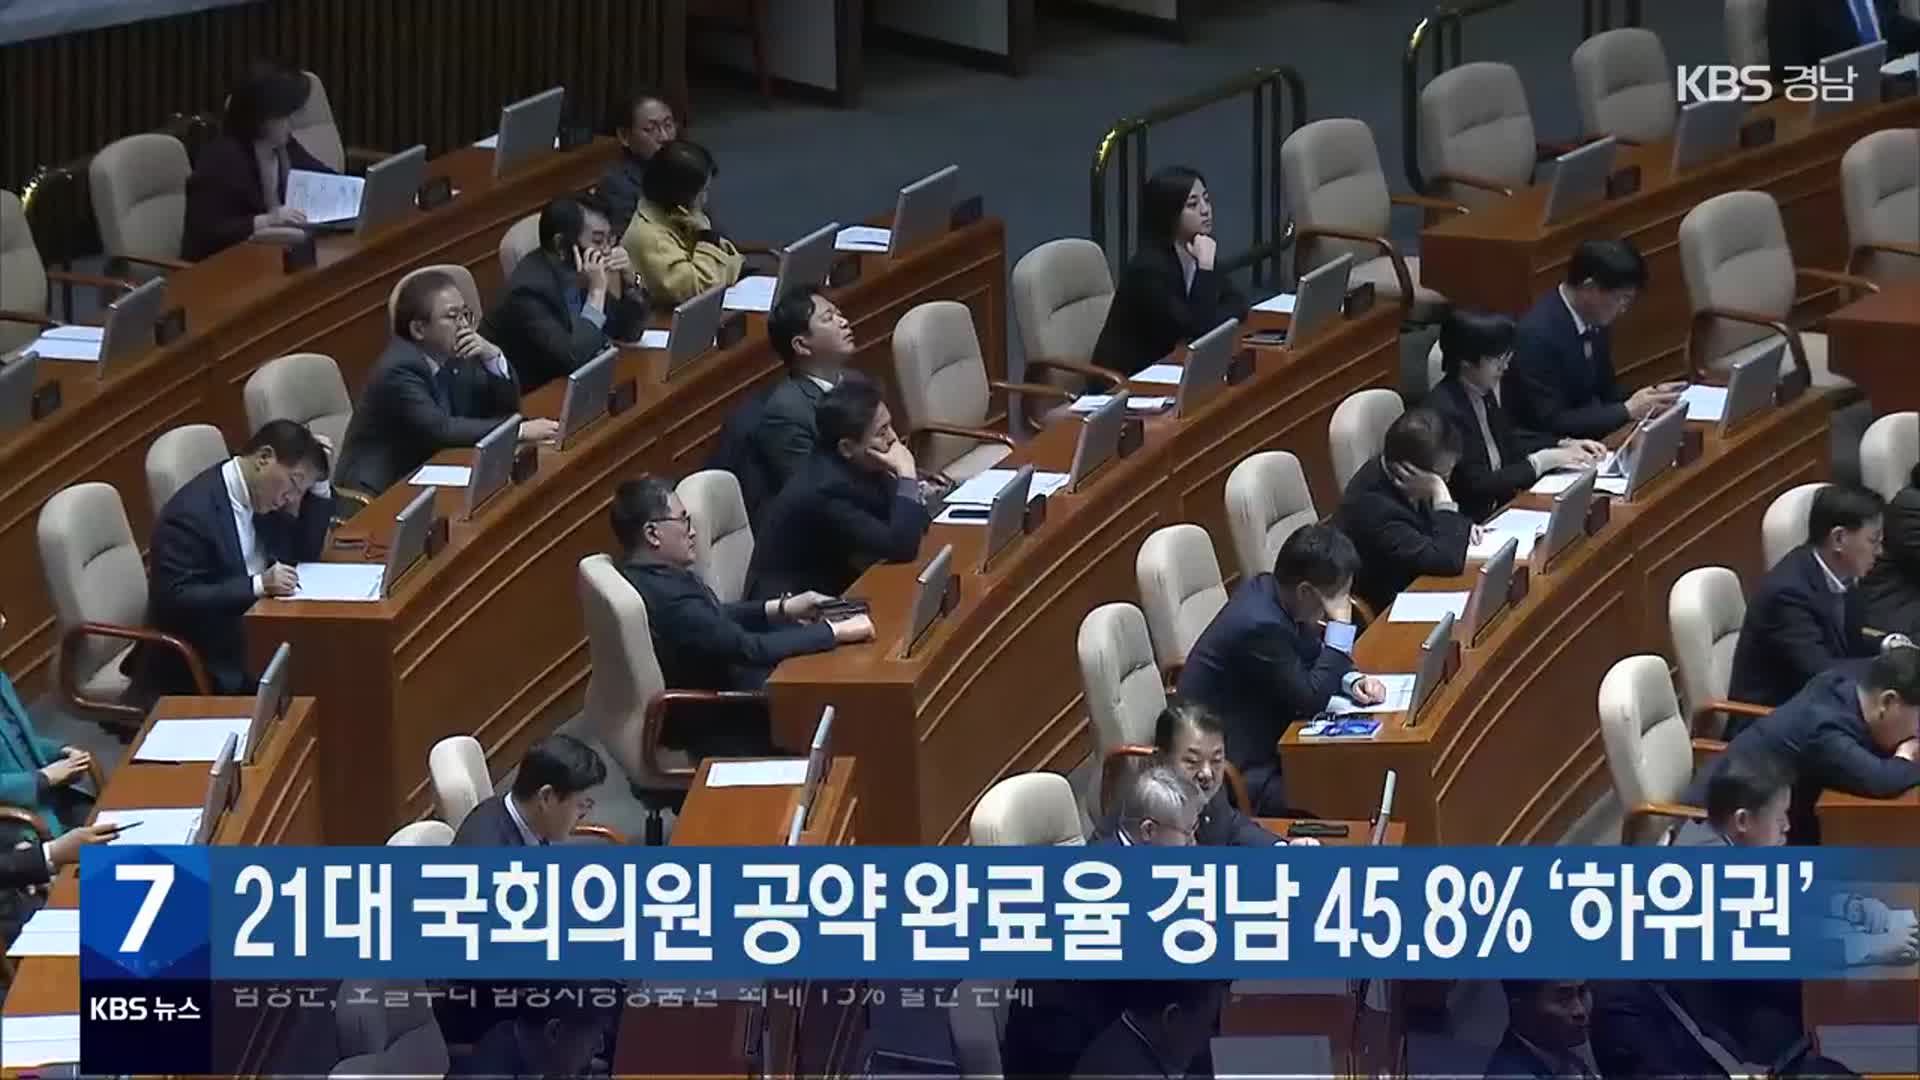 21대 국회의원 공약 완료율 경남 45.8% ‘하위권’